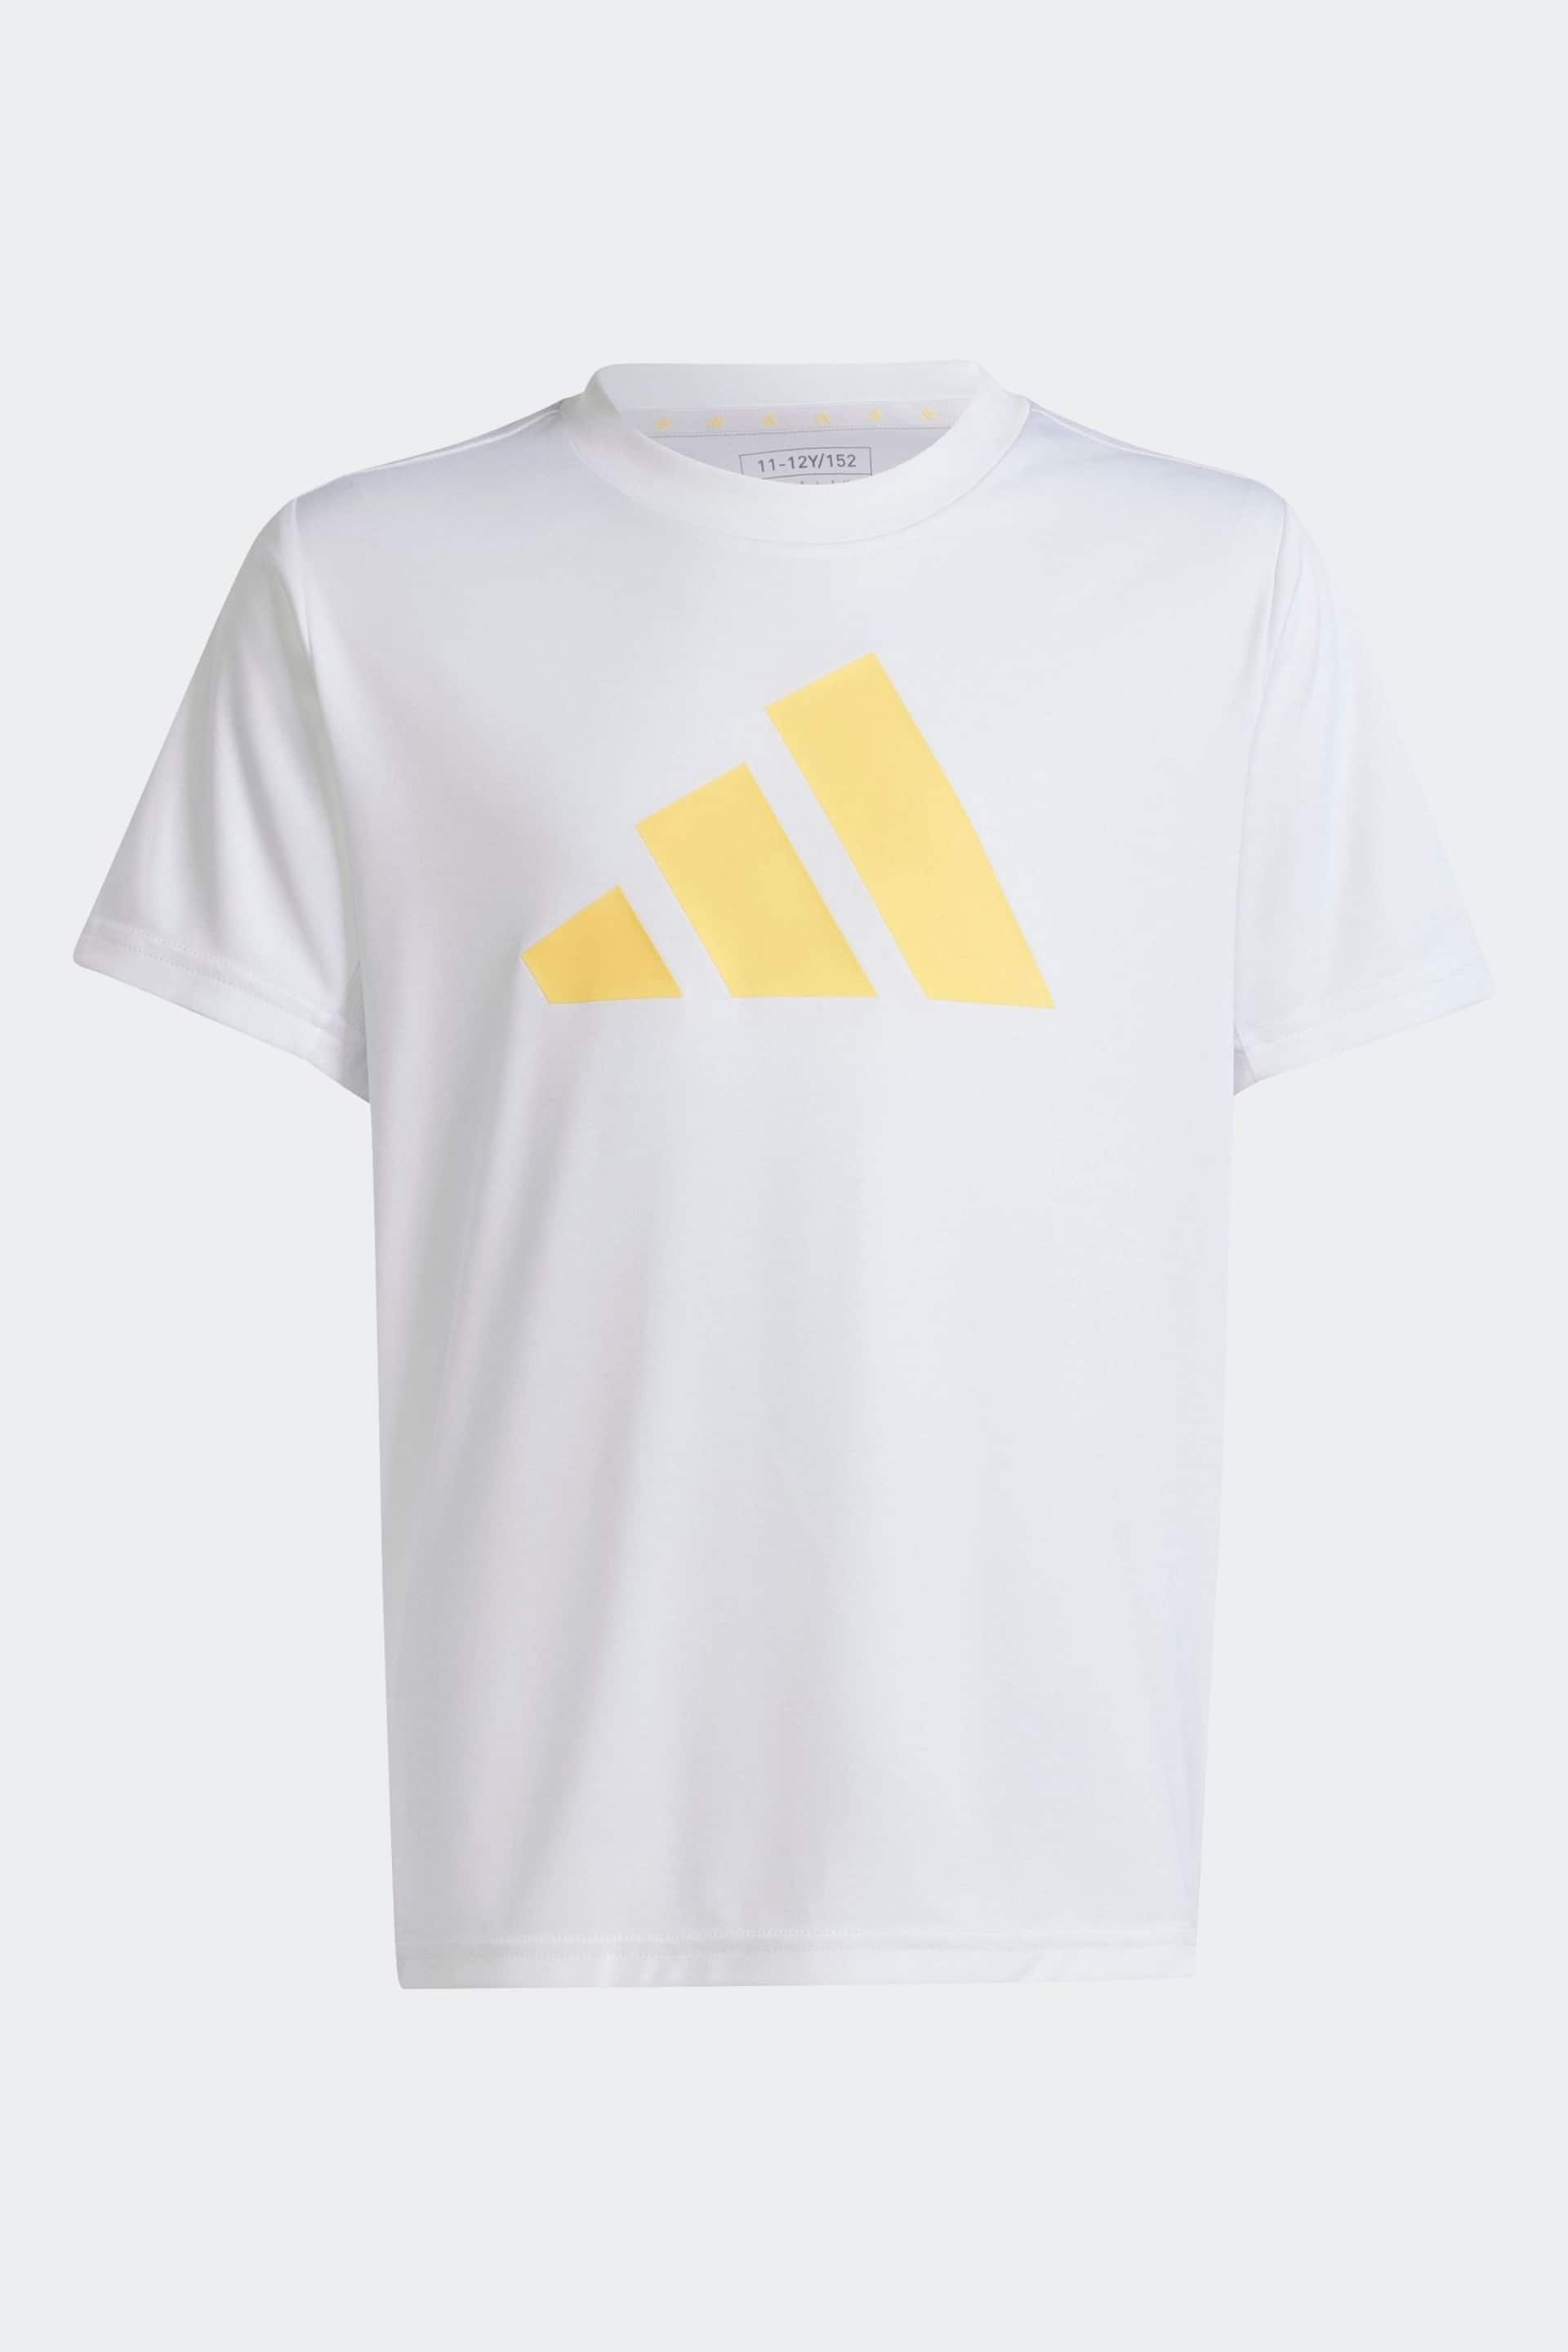 adidas White T-Shirt - Image 1 of 5